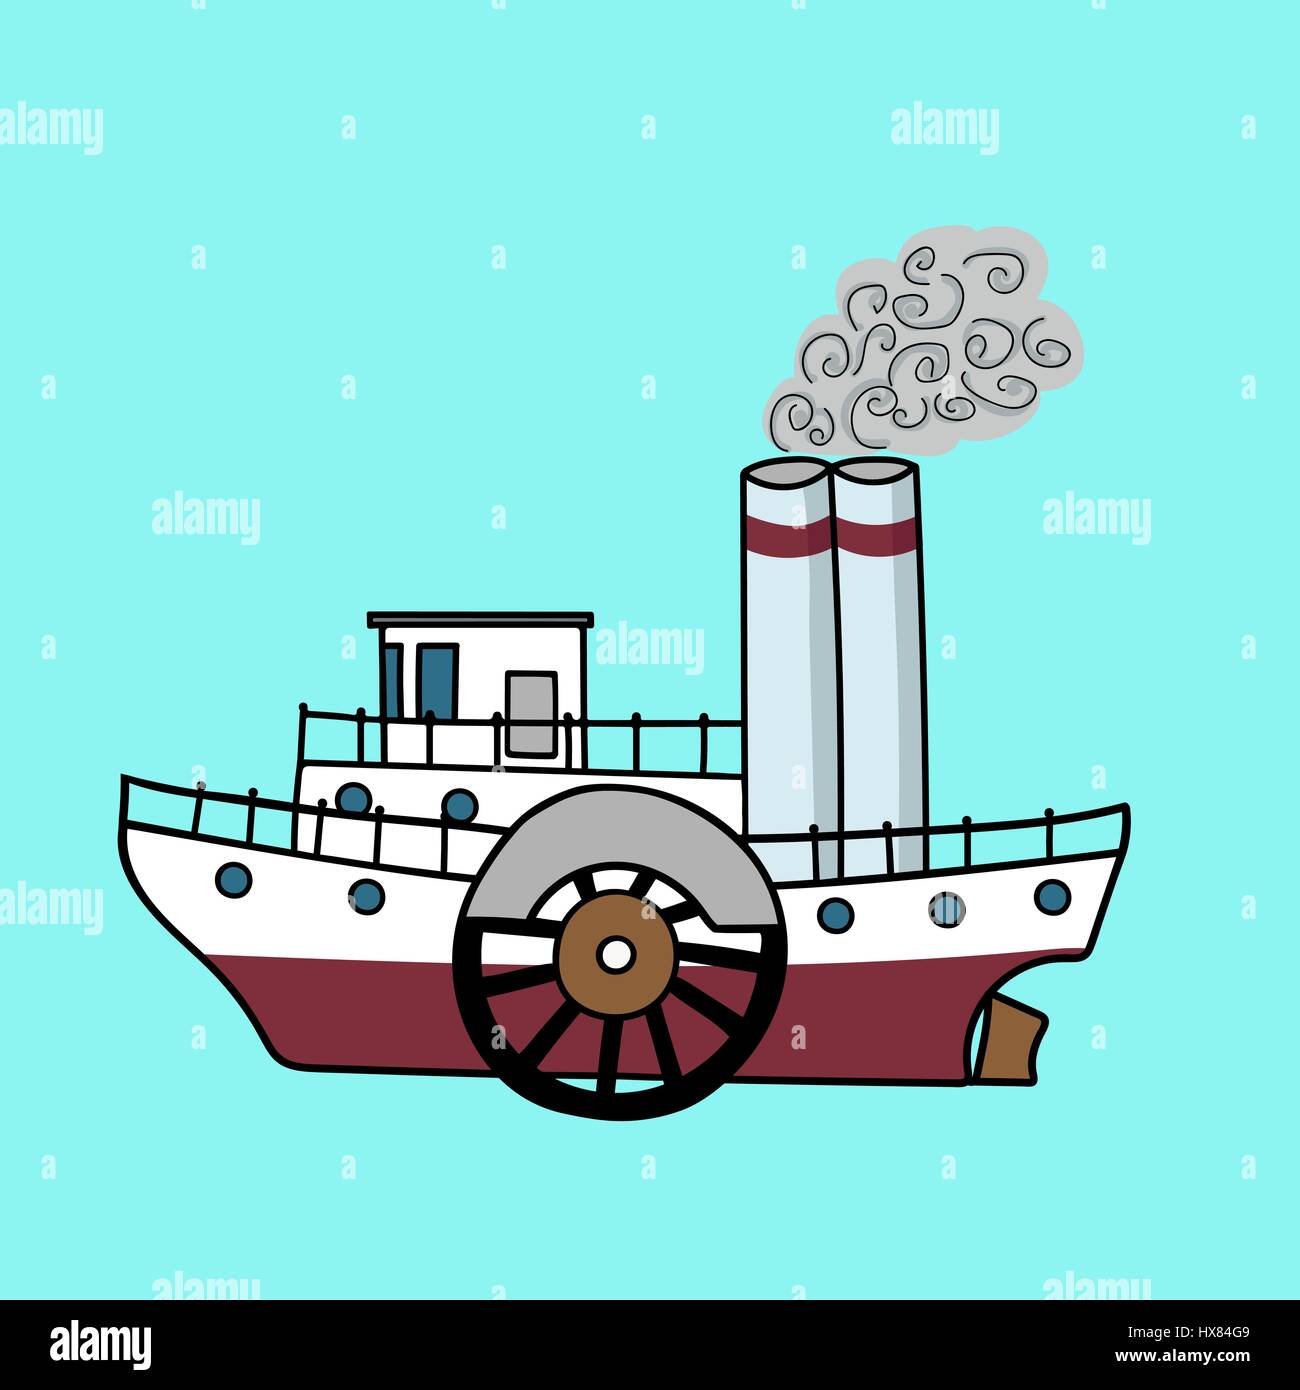 Télévision Cartoon dans le bateau à vapeur style rétro. Vieux vapeur sur un fond bleu. Hand drawn vector illustration. Illustration de Vecteur